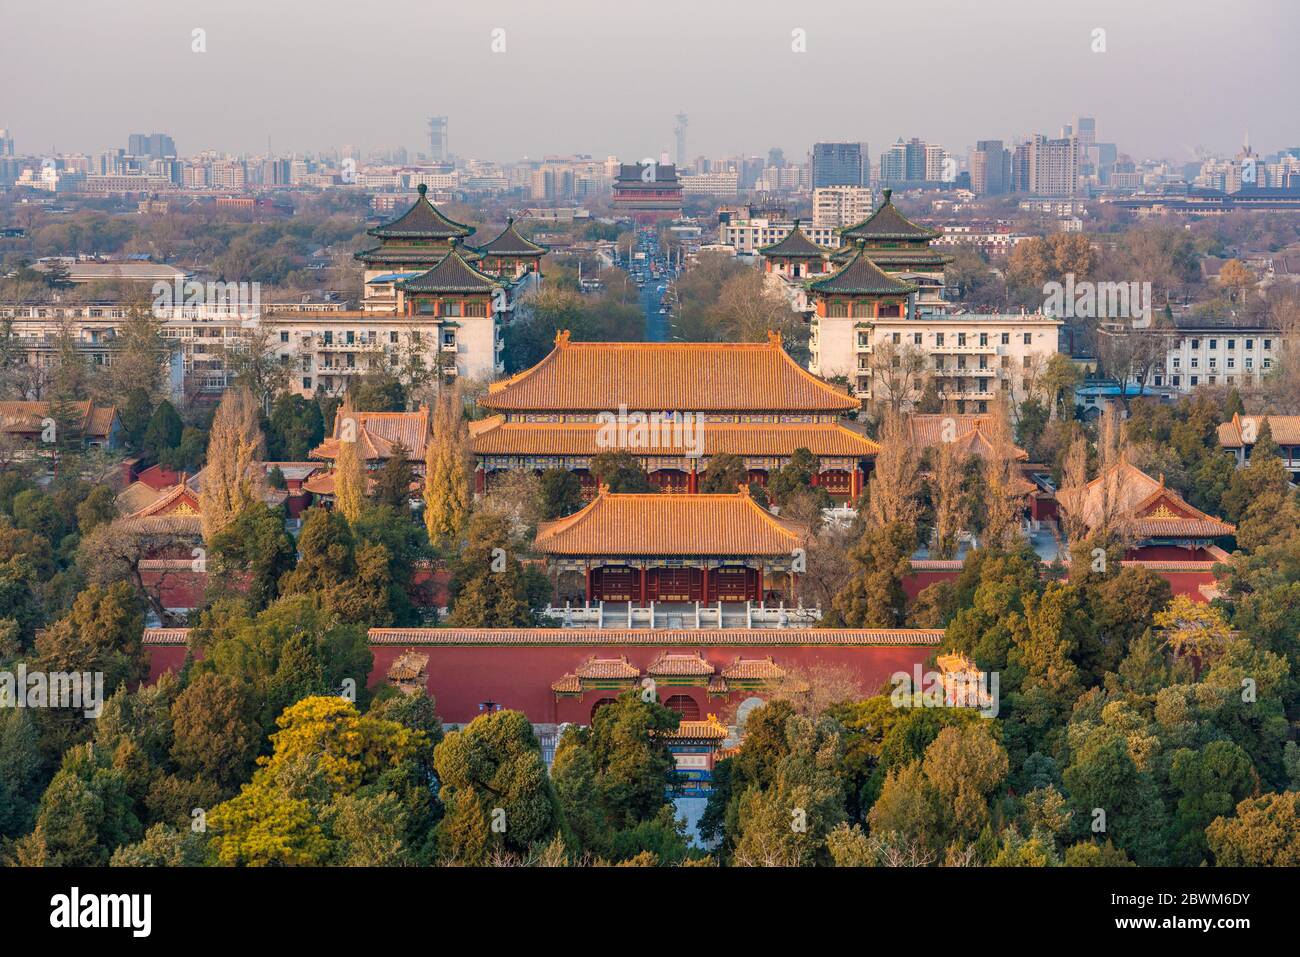 PECHINO, CINA - NOVEMBRE 28: Vista dell'architettura tradizionale Cinese del Parco di Jingshan con edifici cittadini in lontananza il 28 Novembre 2019 a Beiji Foto Stock